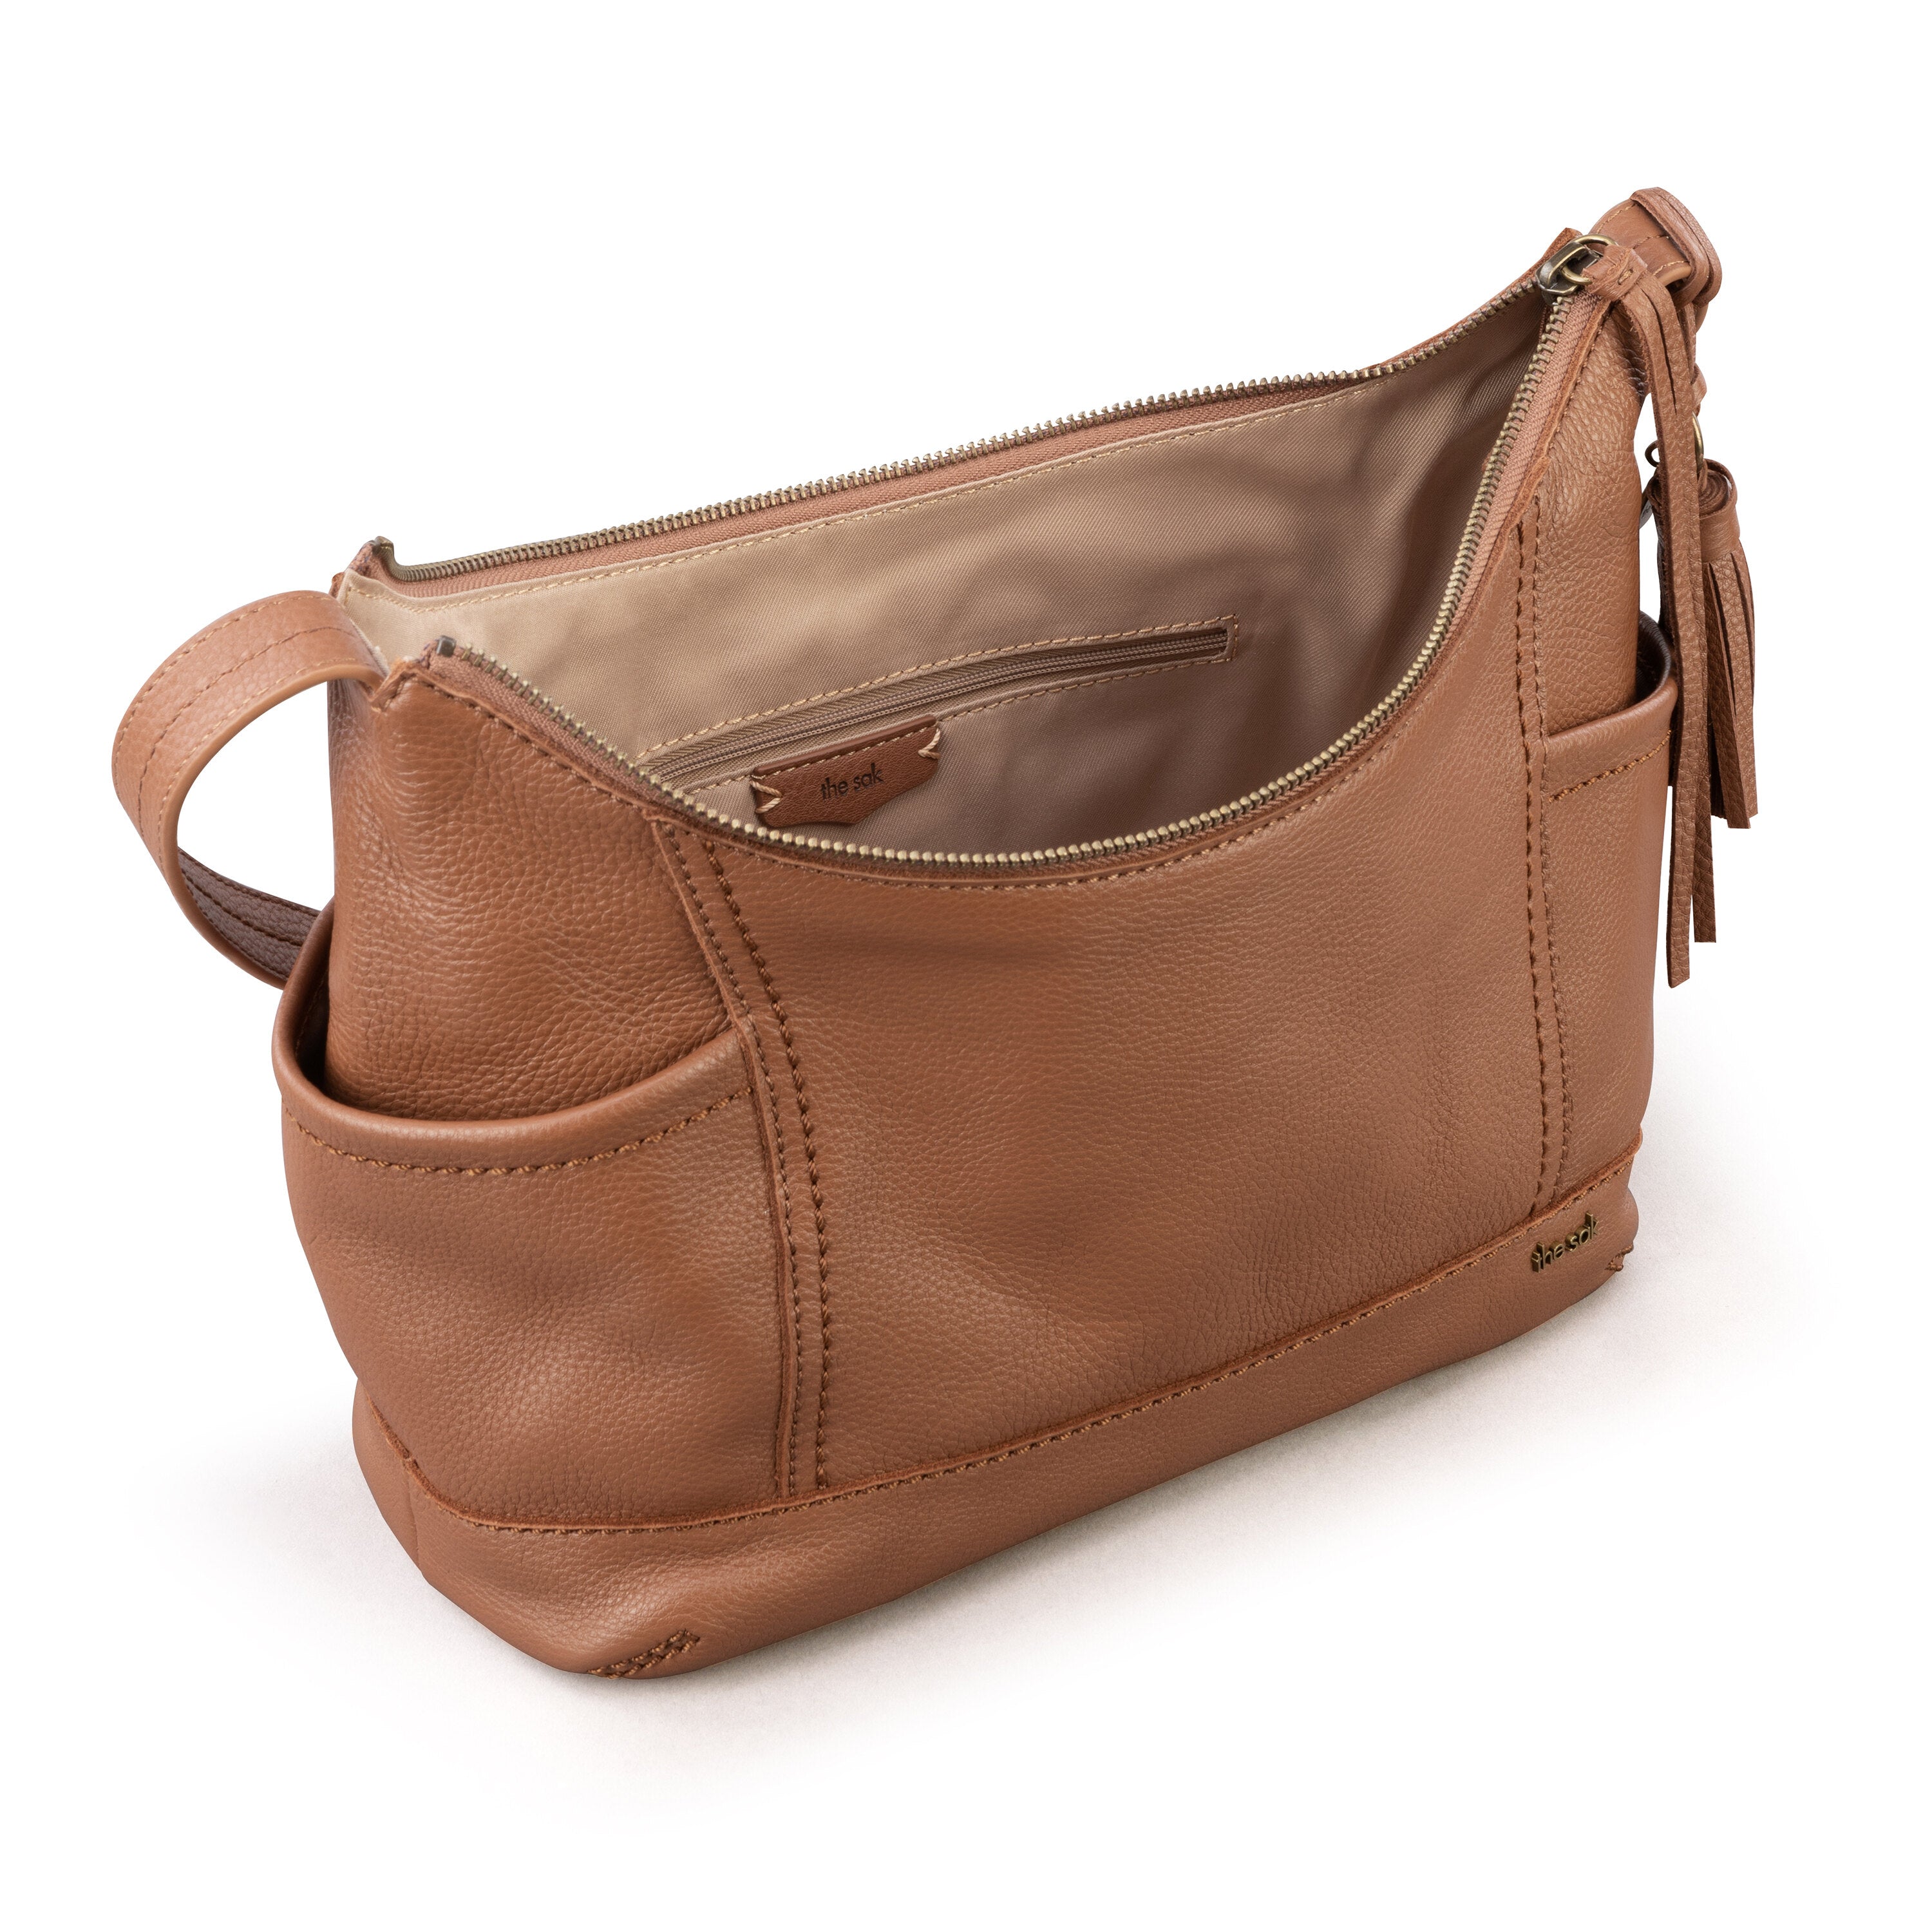 The Sak Dark Brown Pebbled Leather Shoulder Bag Purse Brown | eBay